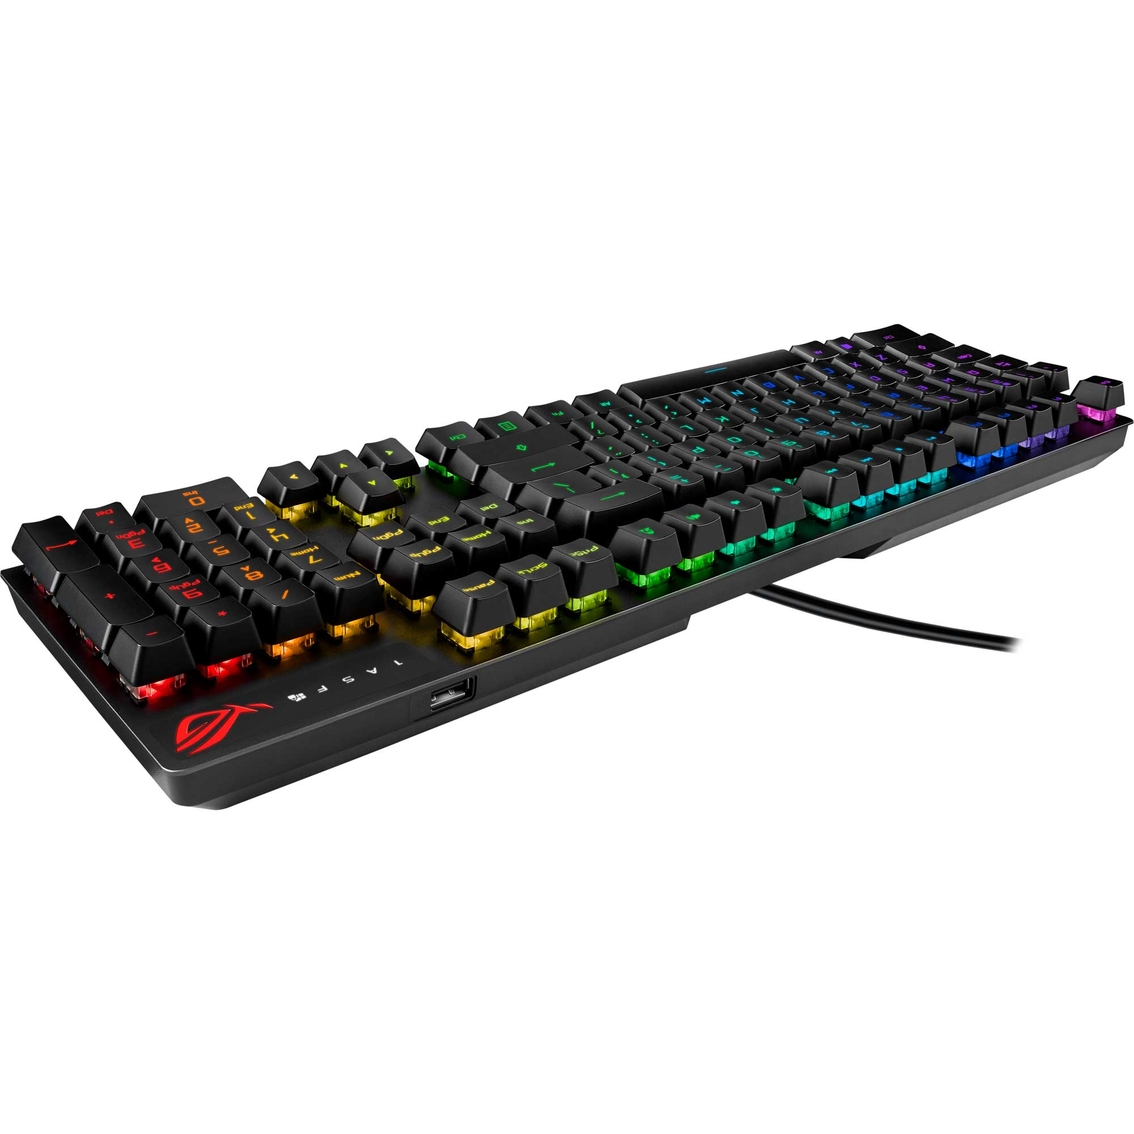 Asus ROG Strix Scope RX Gaming Keyboard - Image 6 of 8